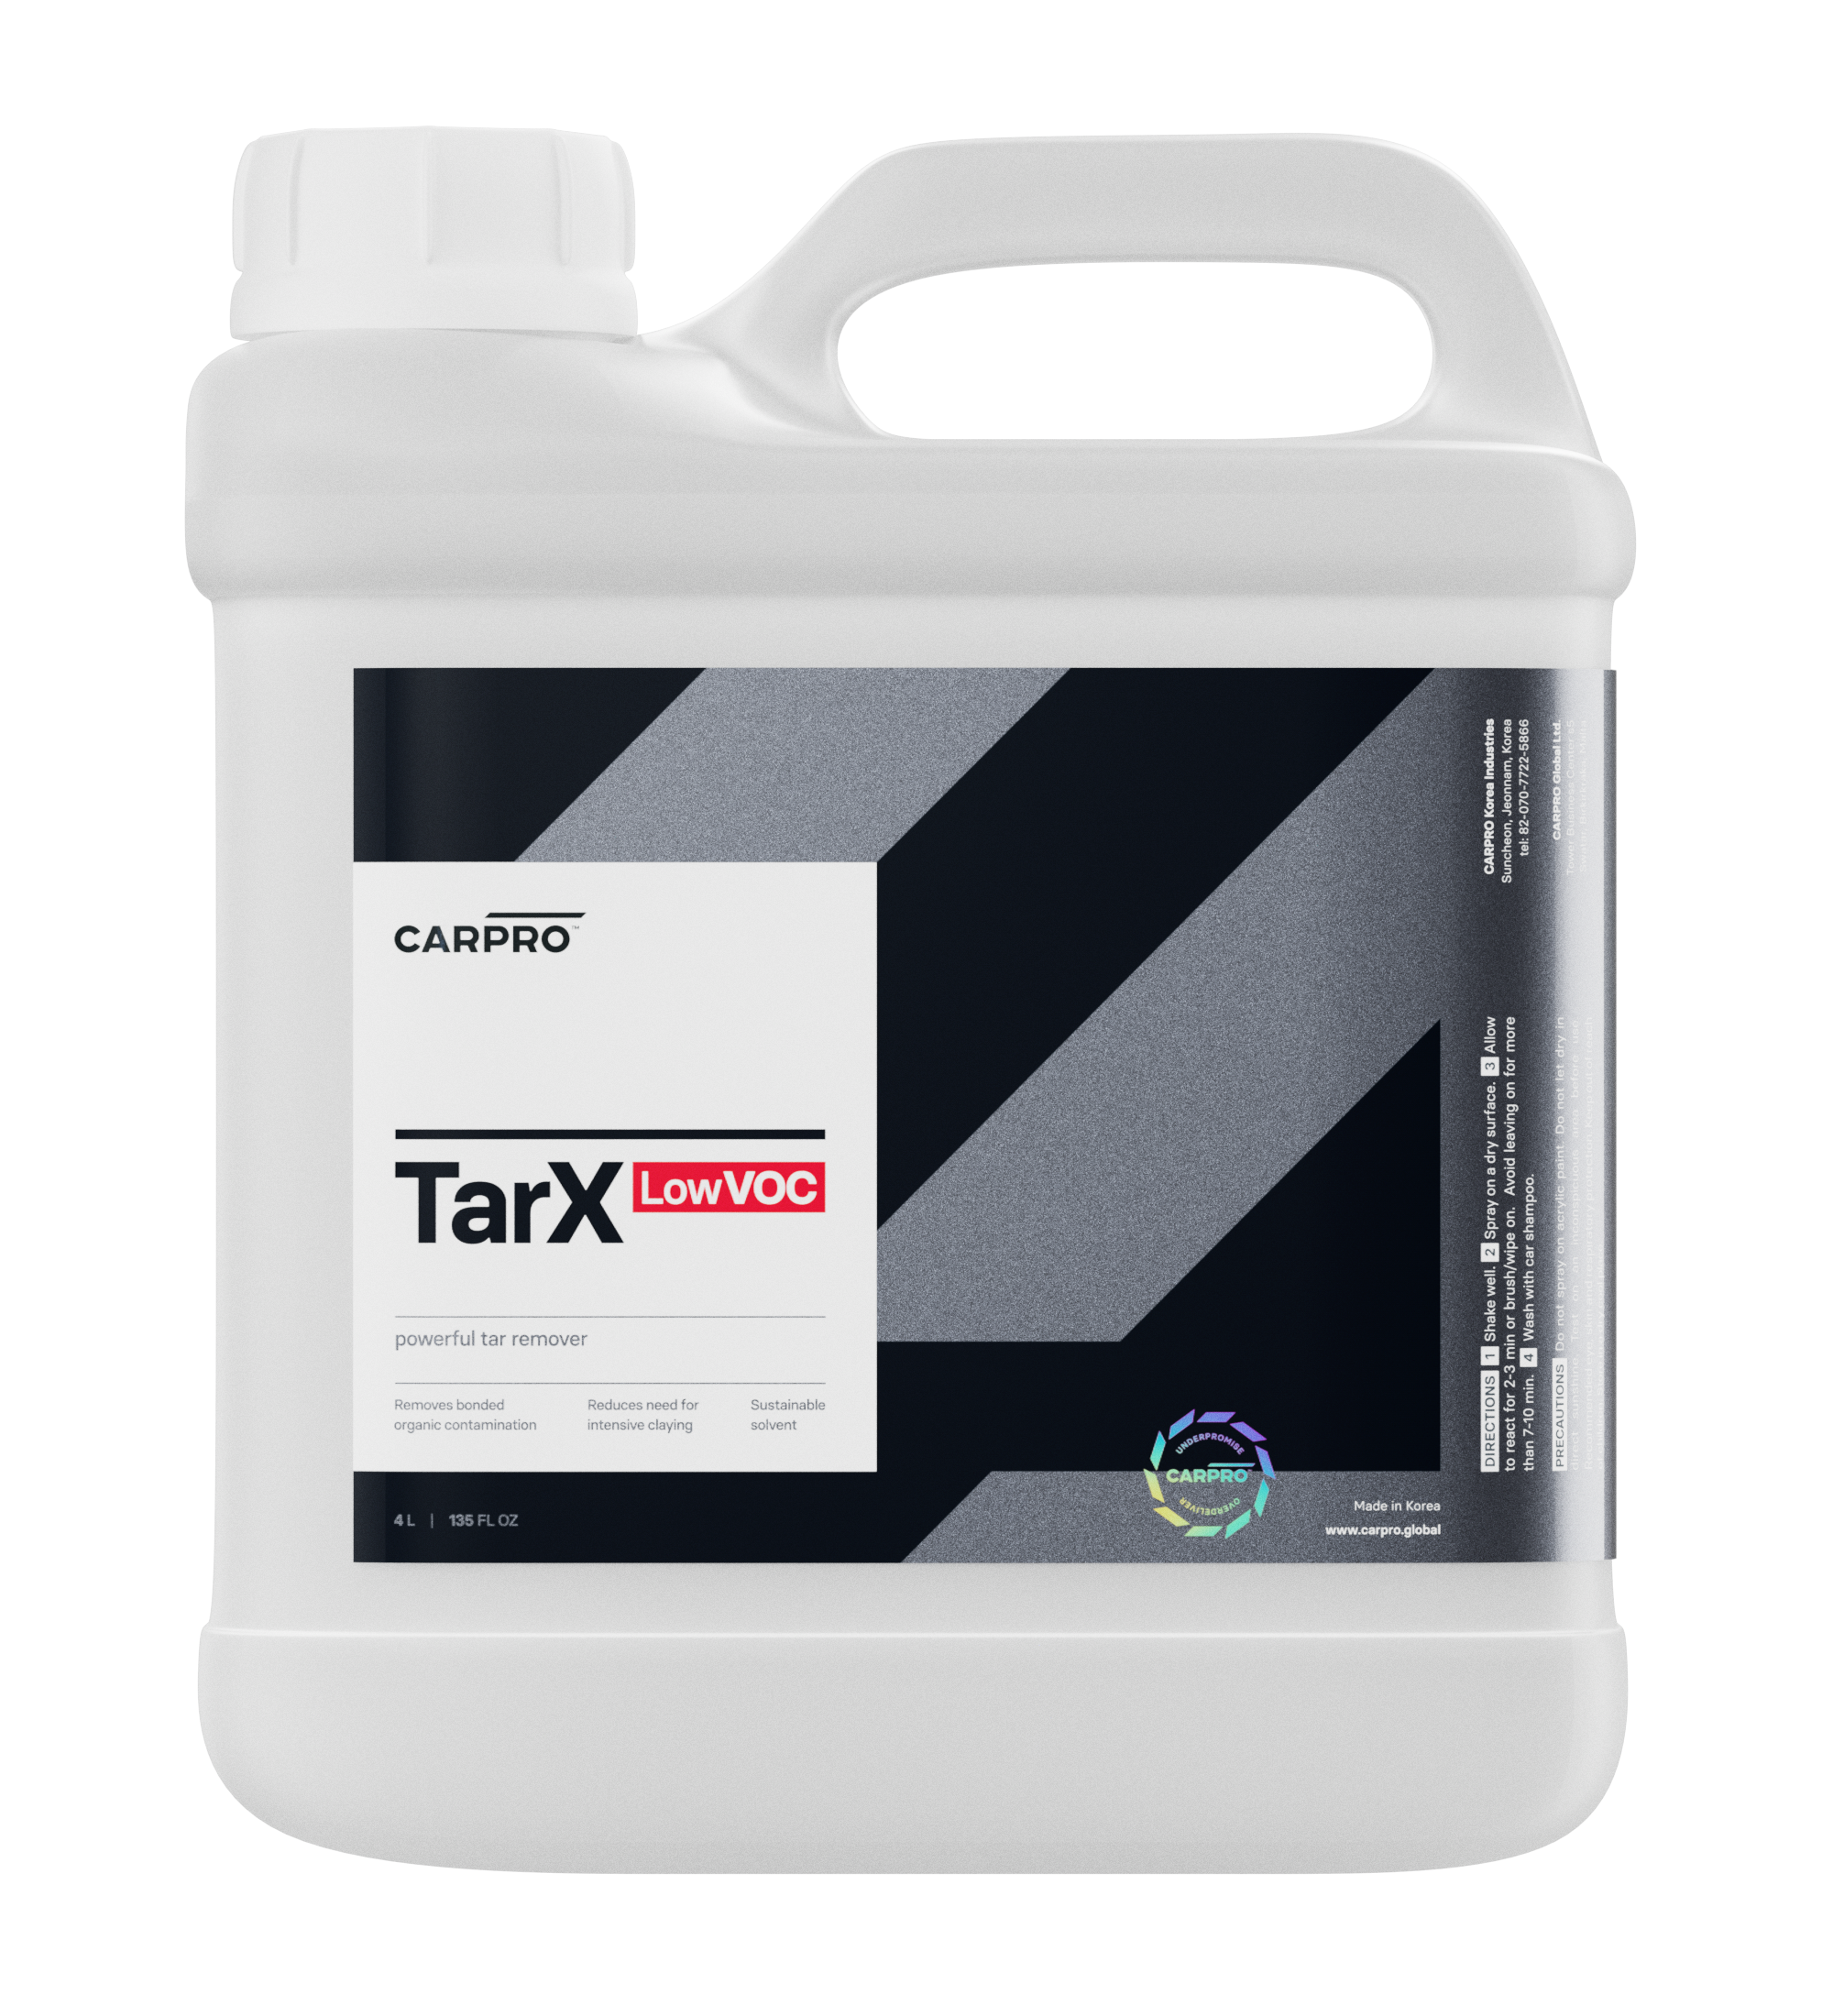 CARPRO TarX LOW VOC 4L - Décontaminant pour goudron et colle